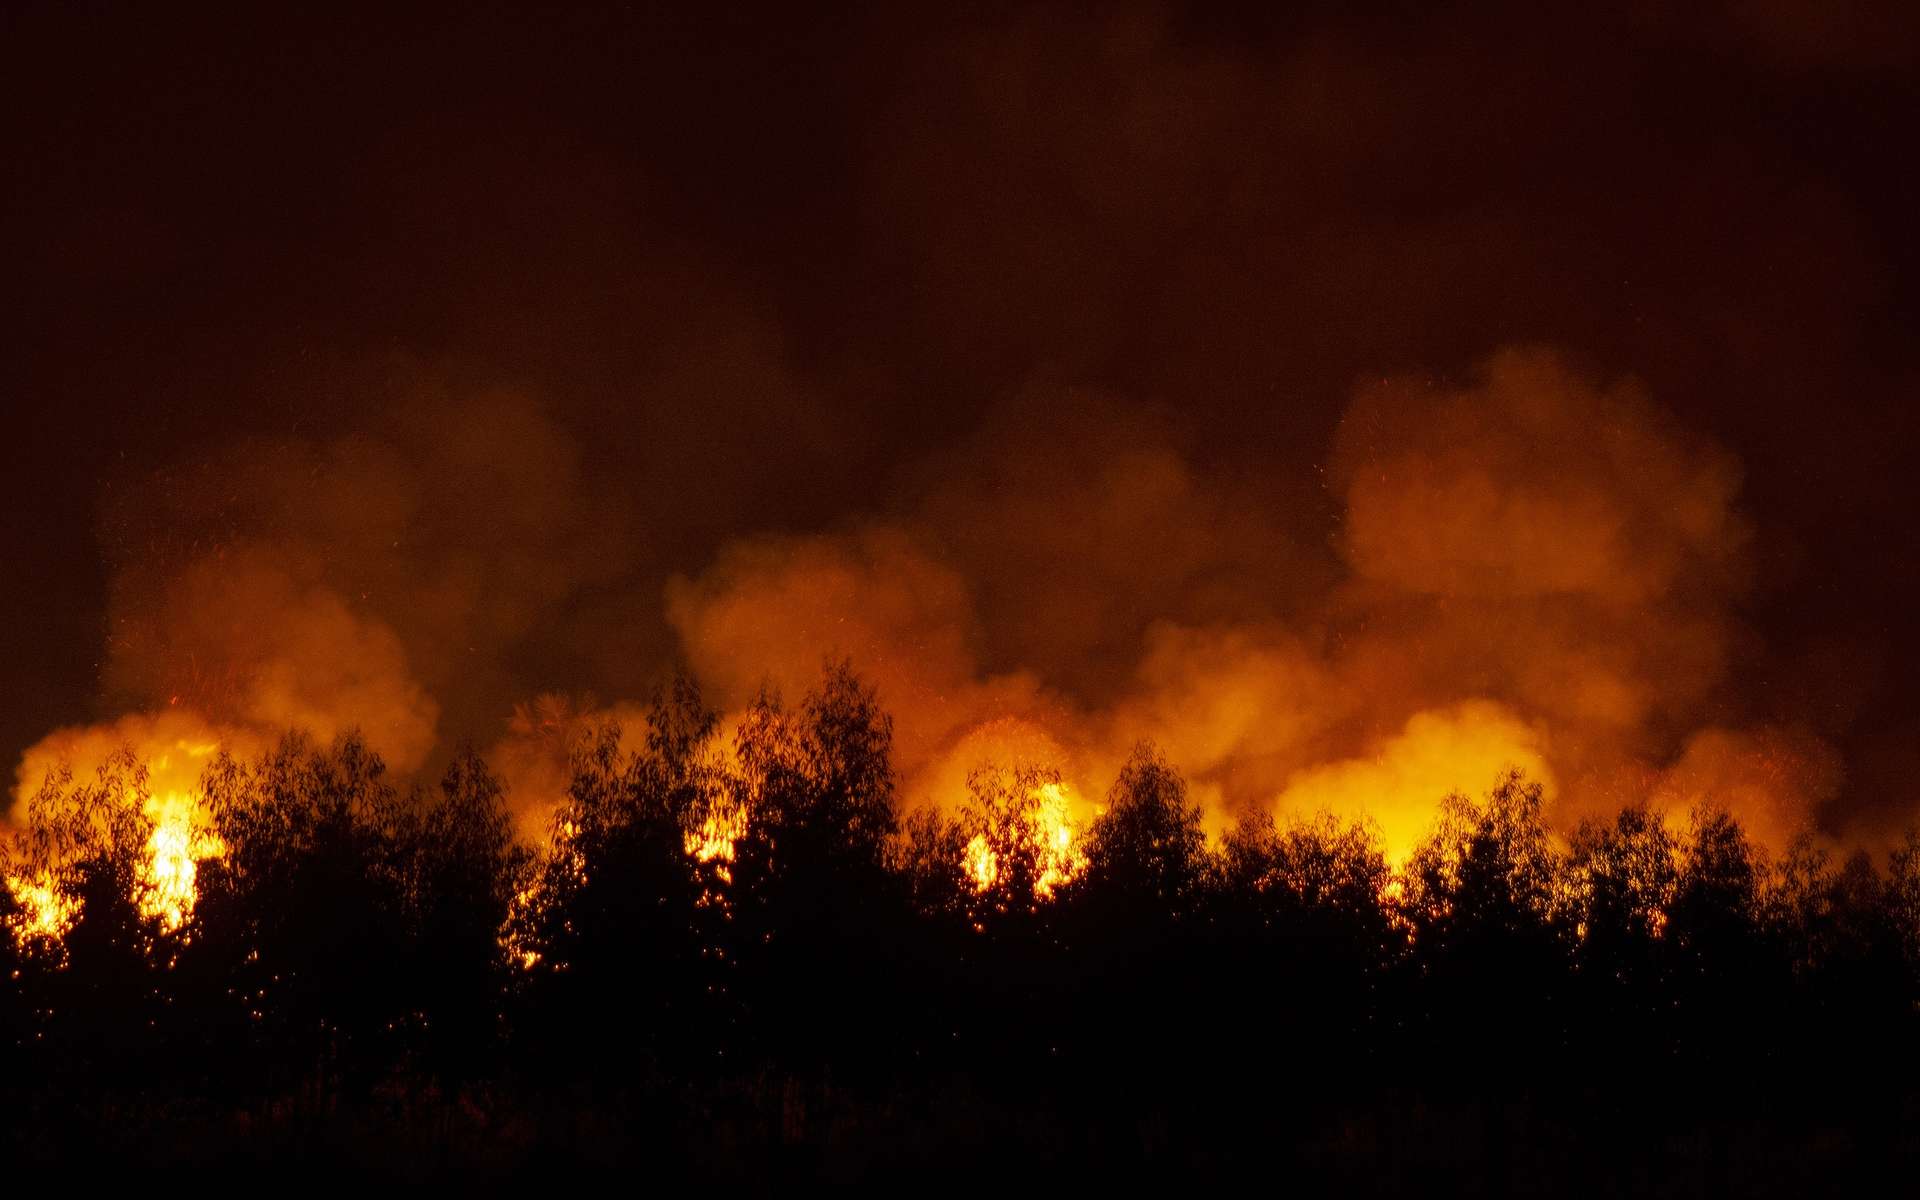 L'été 2021 a été marqué de nombreux feux de forêts hors de contrôle dans l'hémisphère nord. La Californie continue d'être menacée par les flammes. © pandpstock001, Adobe Stock